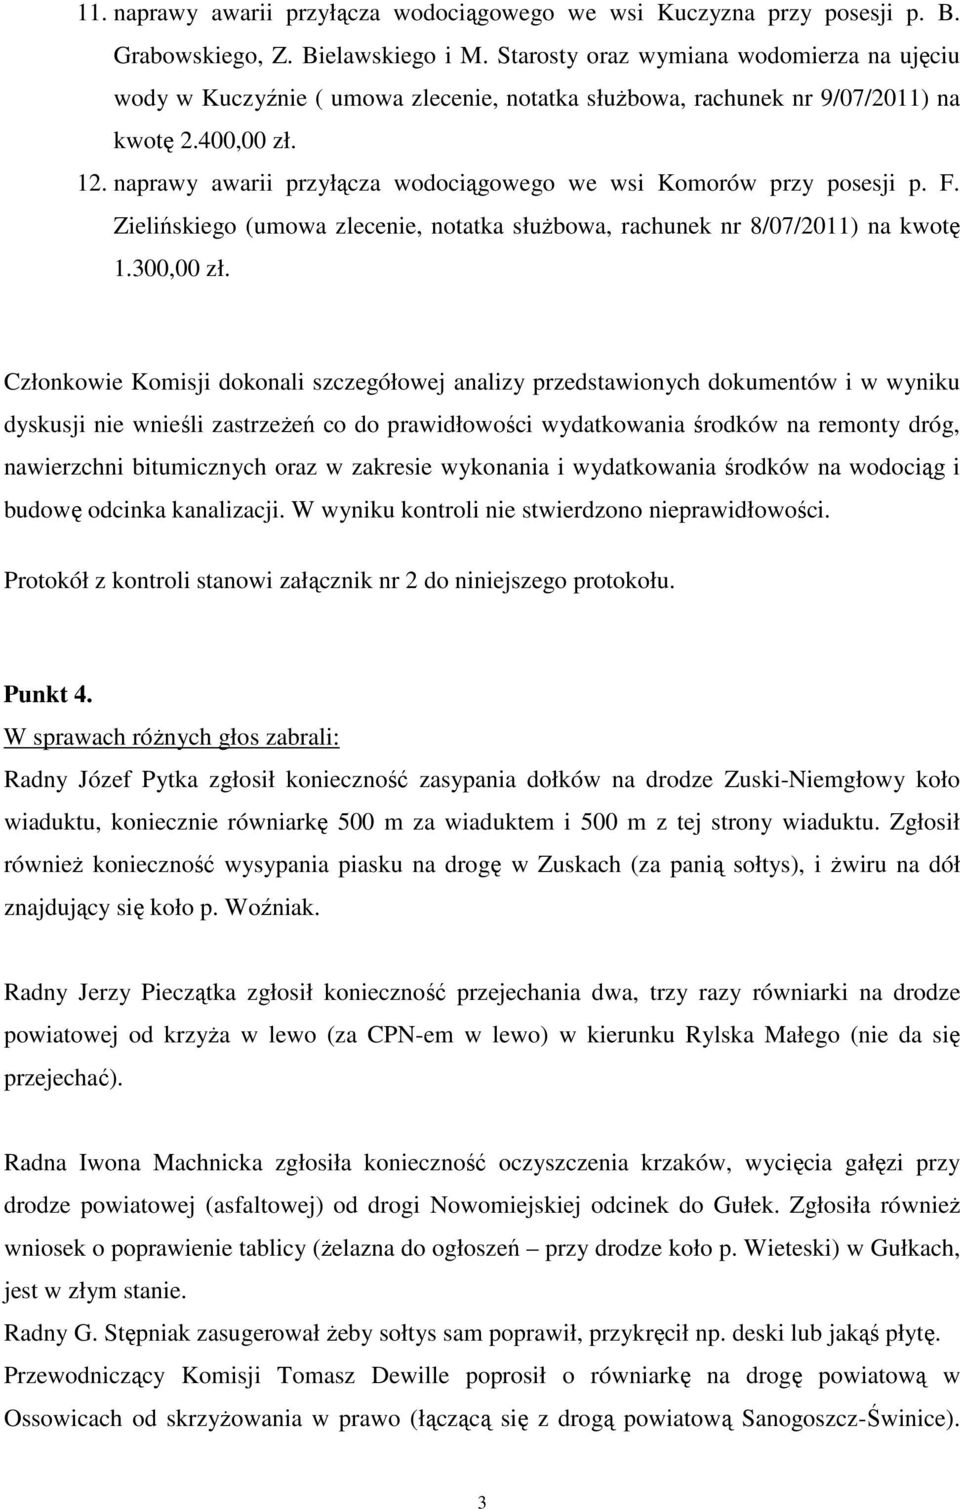 naprawy awarii przyłącza wodociągowego we wsi Komorów przy posesji p. F. Zielińskiego (umowa zlecenie, notatka służbowa, rachunek nr 8/07/2011) na kwotę 1.300,00 zł.